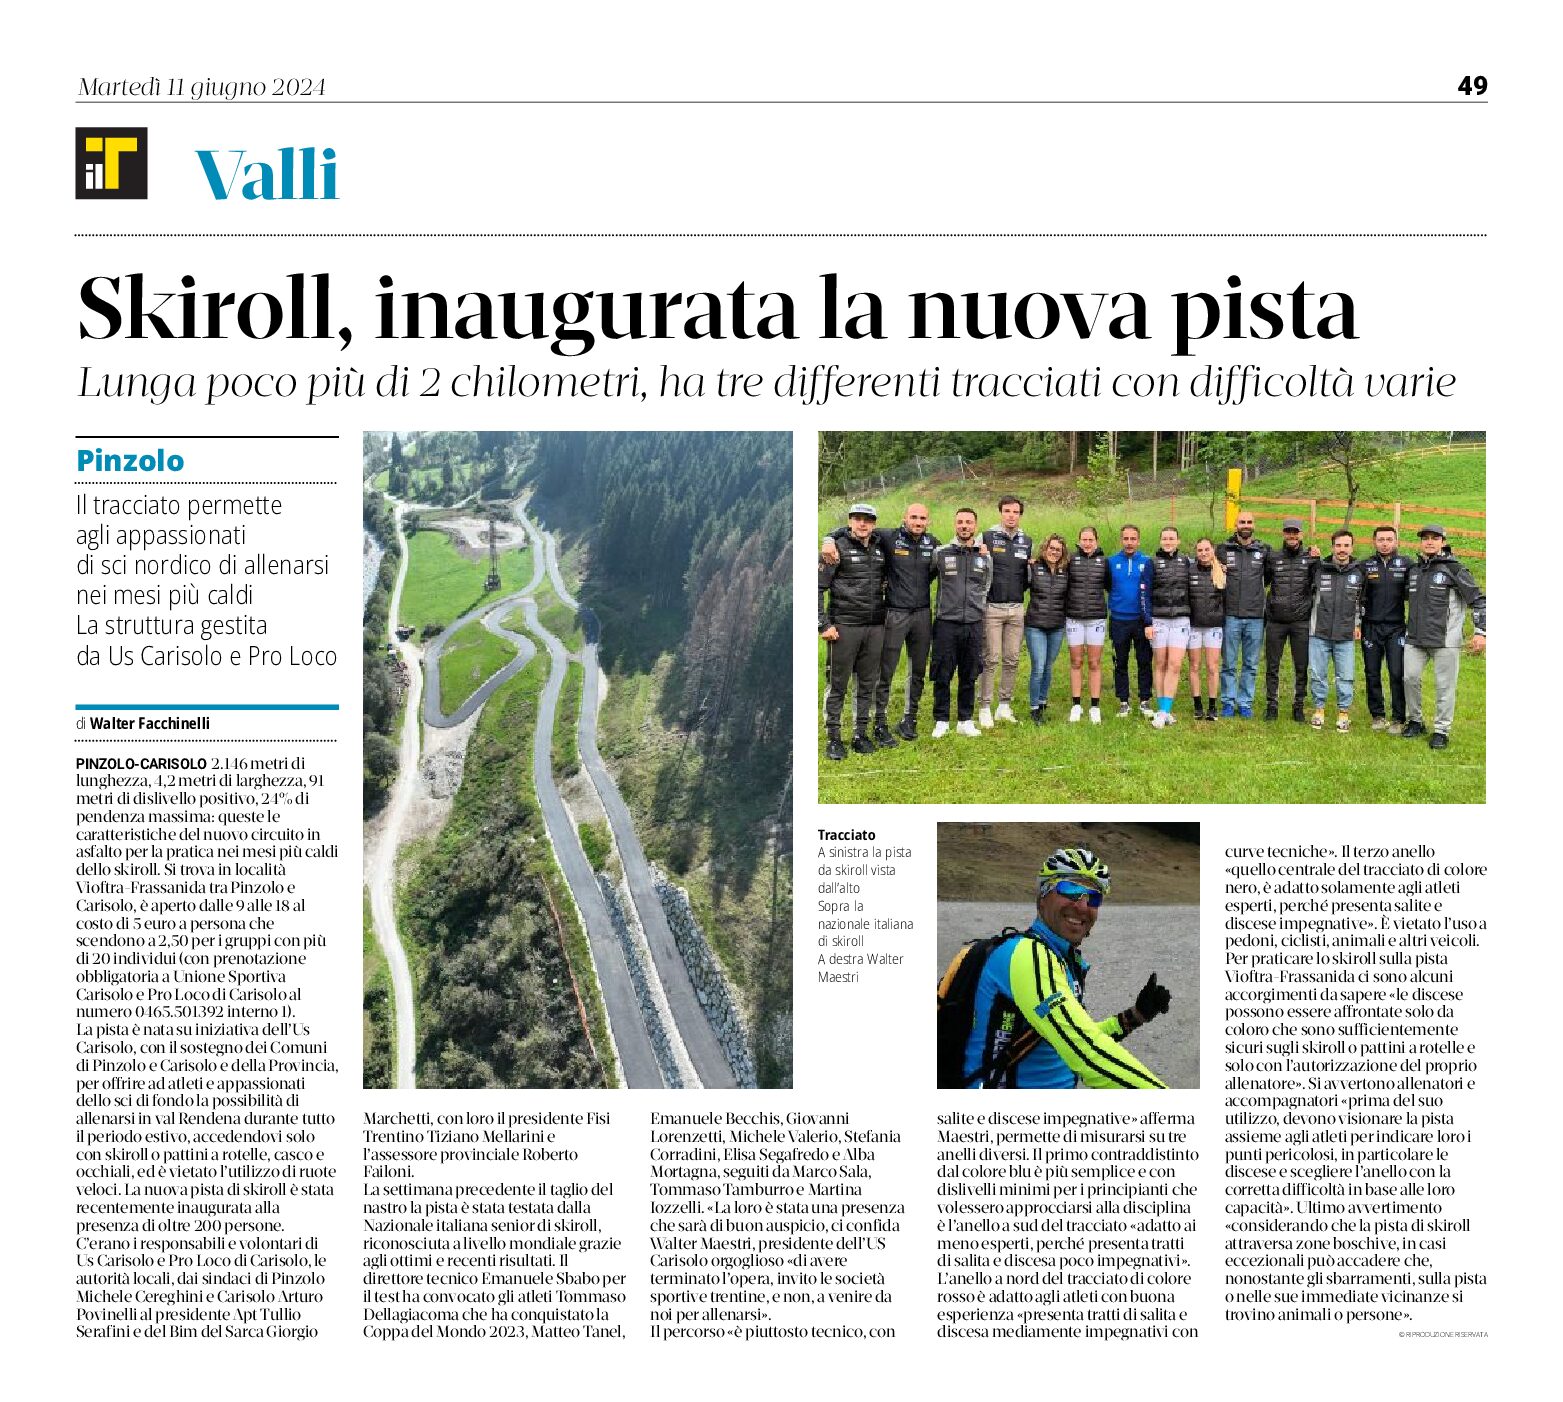 Pinzolo: skiroll, inaugurata la nuova pista